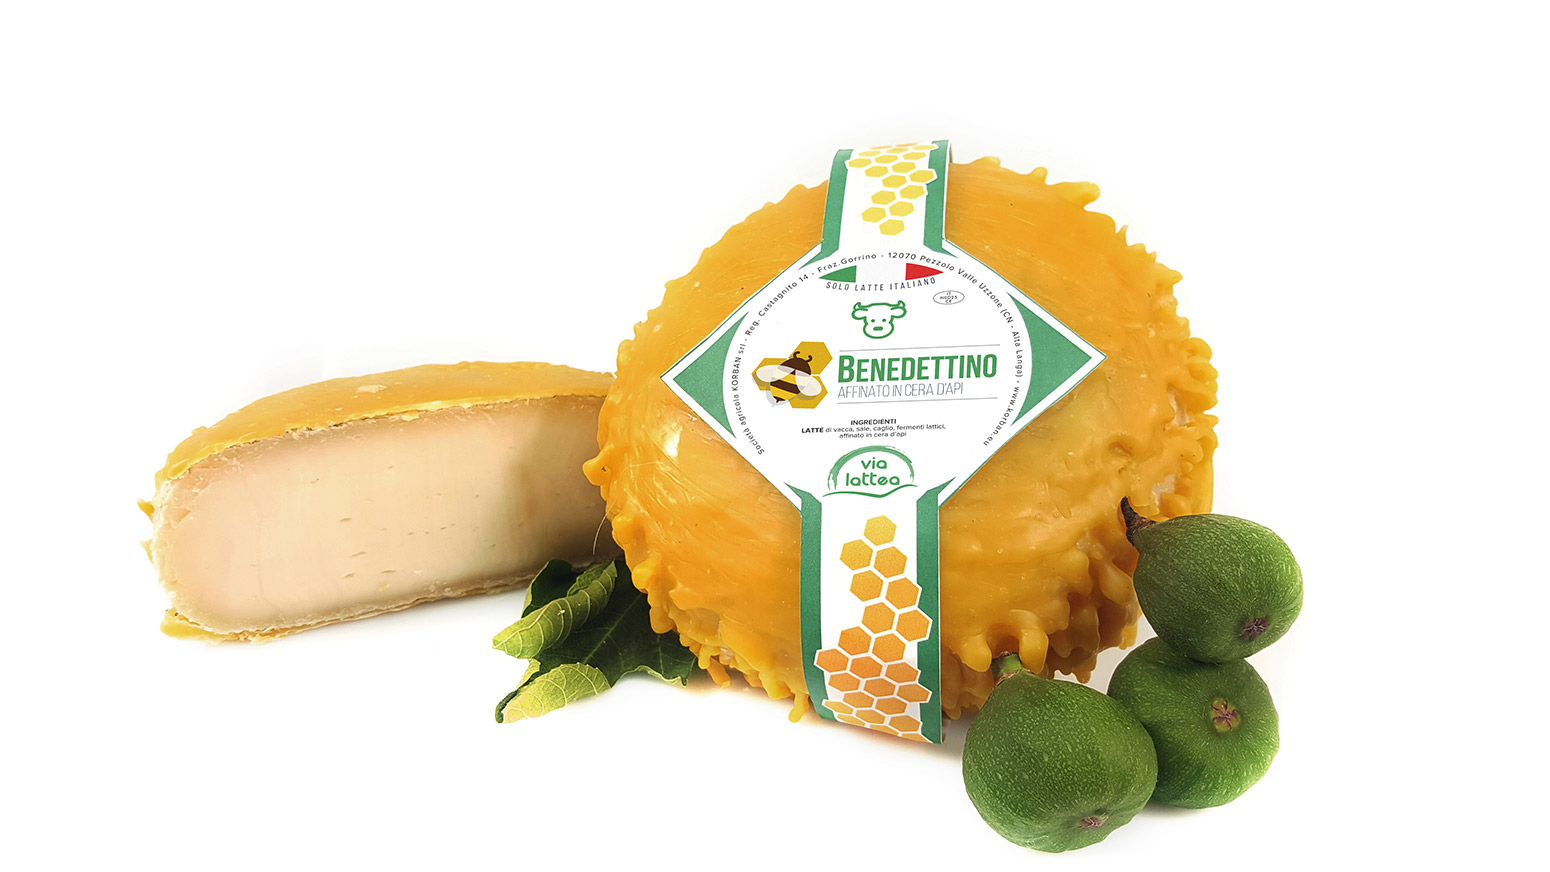 Benedettino formaggio stagionato in cera d'api